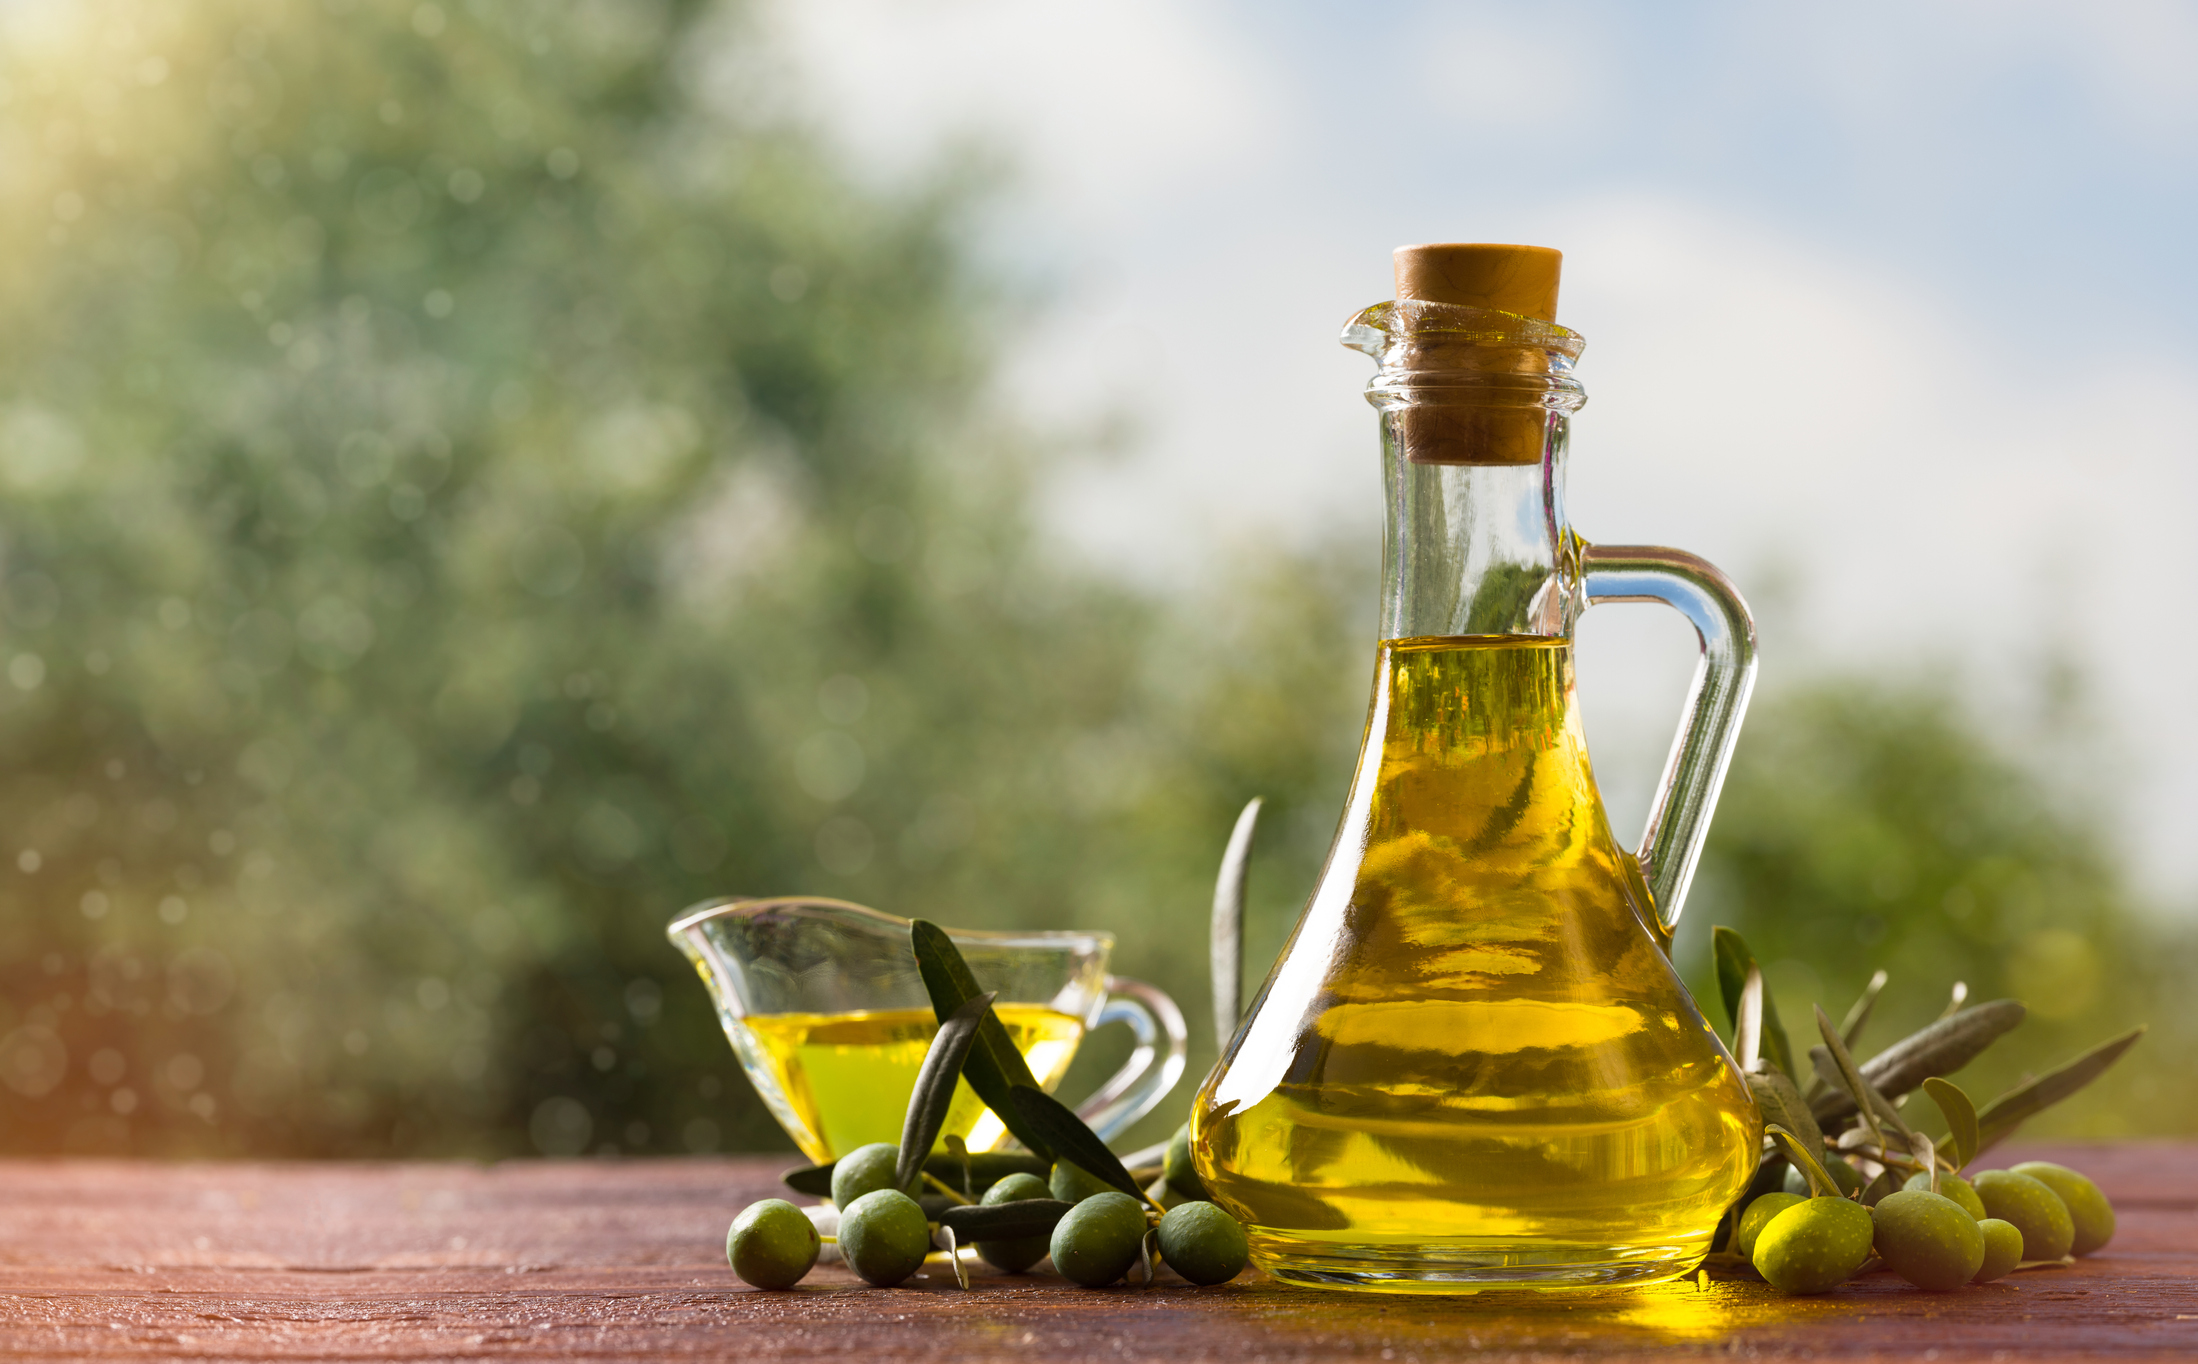 Diferencia entre el aceite de oliva virgen y extra virgen - ¡Conócelos!